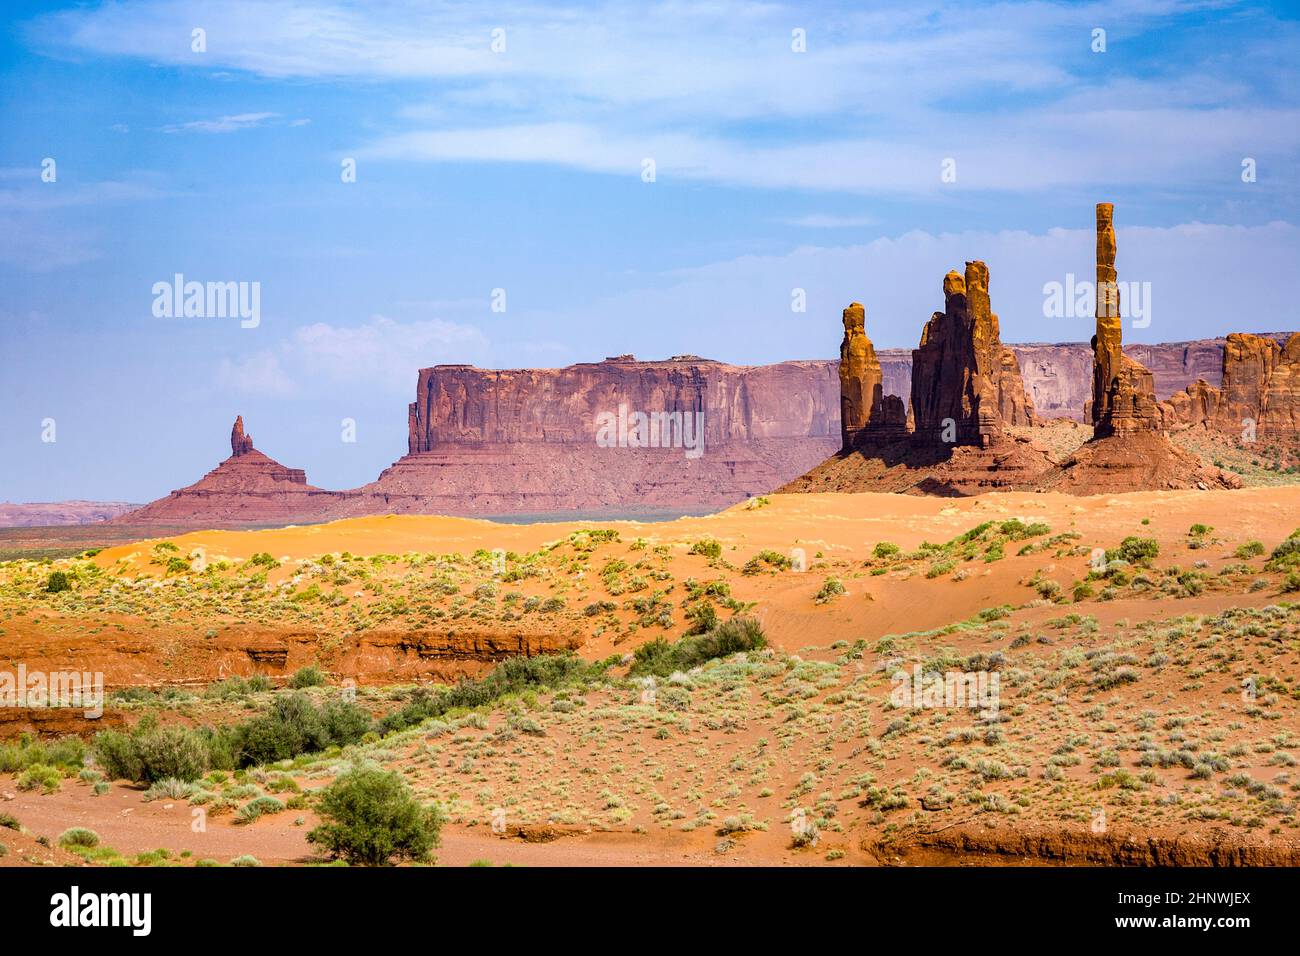 Im Monument Valley in Arizona, Blick auf die Steinformation Totem Pole Foto Stock